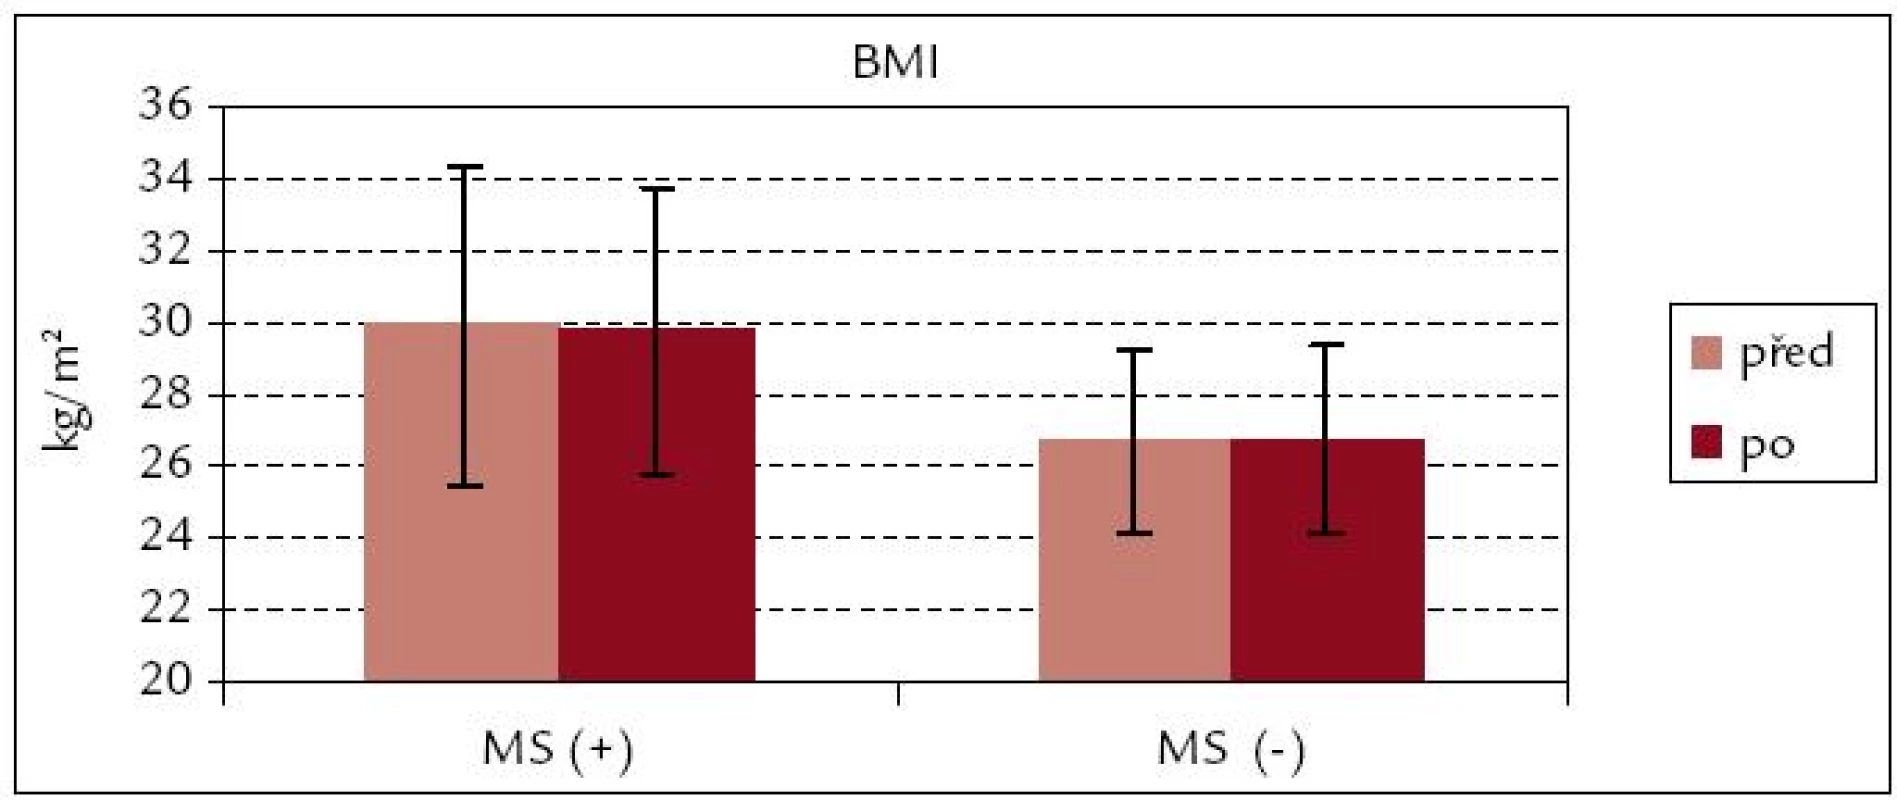 BMI před rehabilitací a po ní – srovnání souborů MS(+) a MS(–).